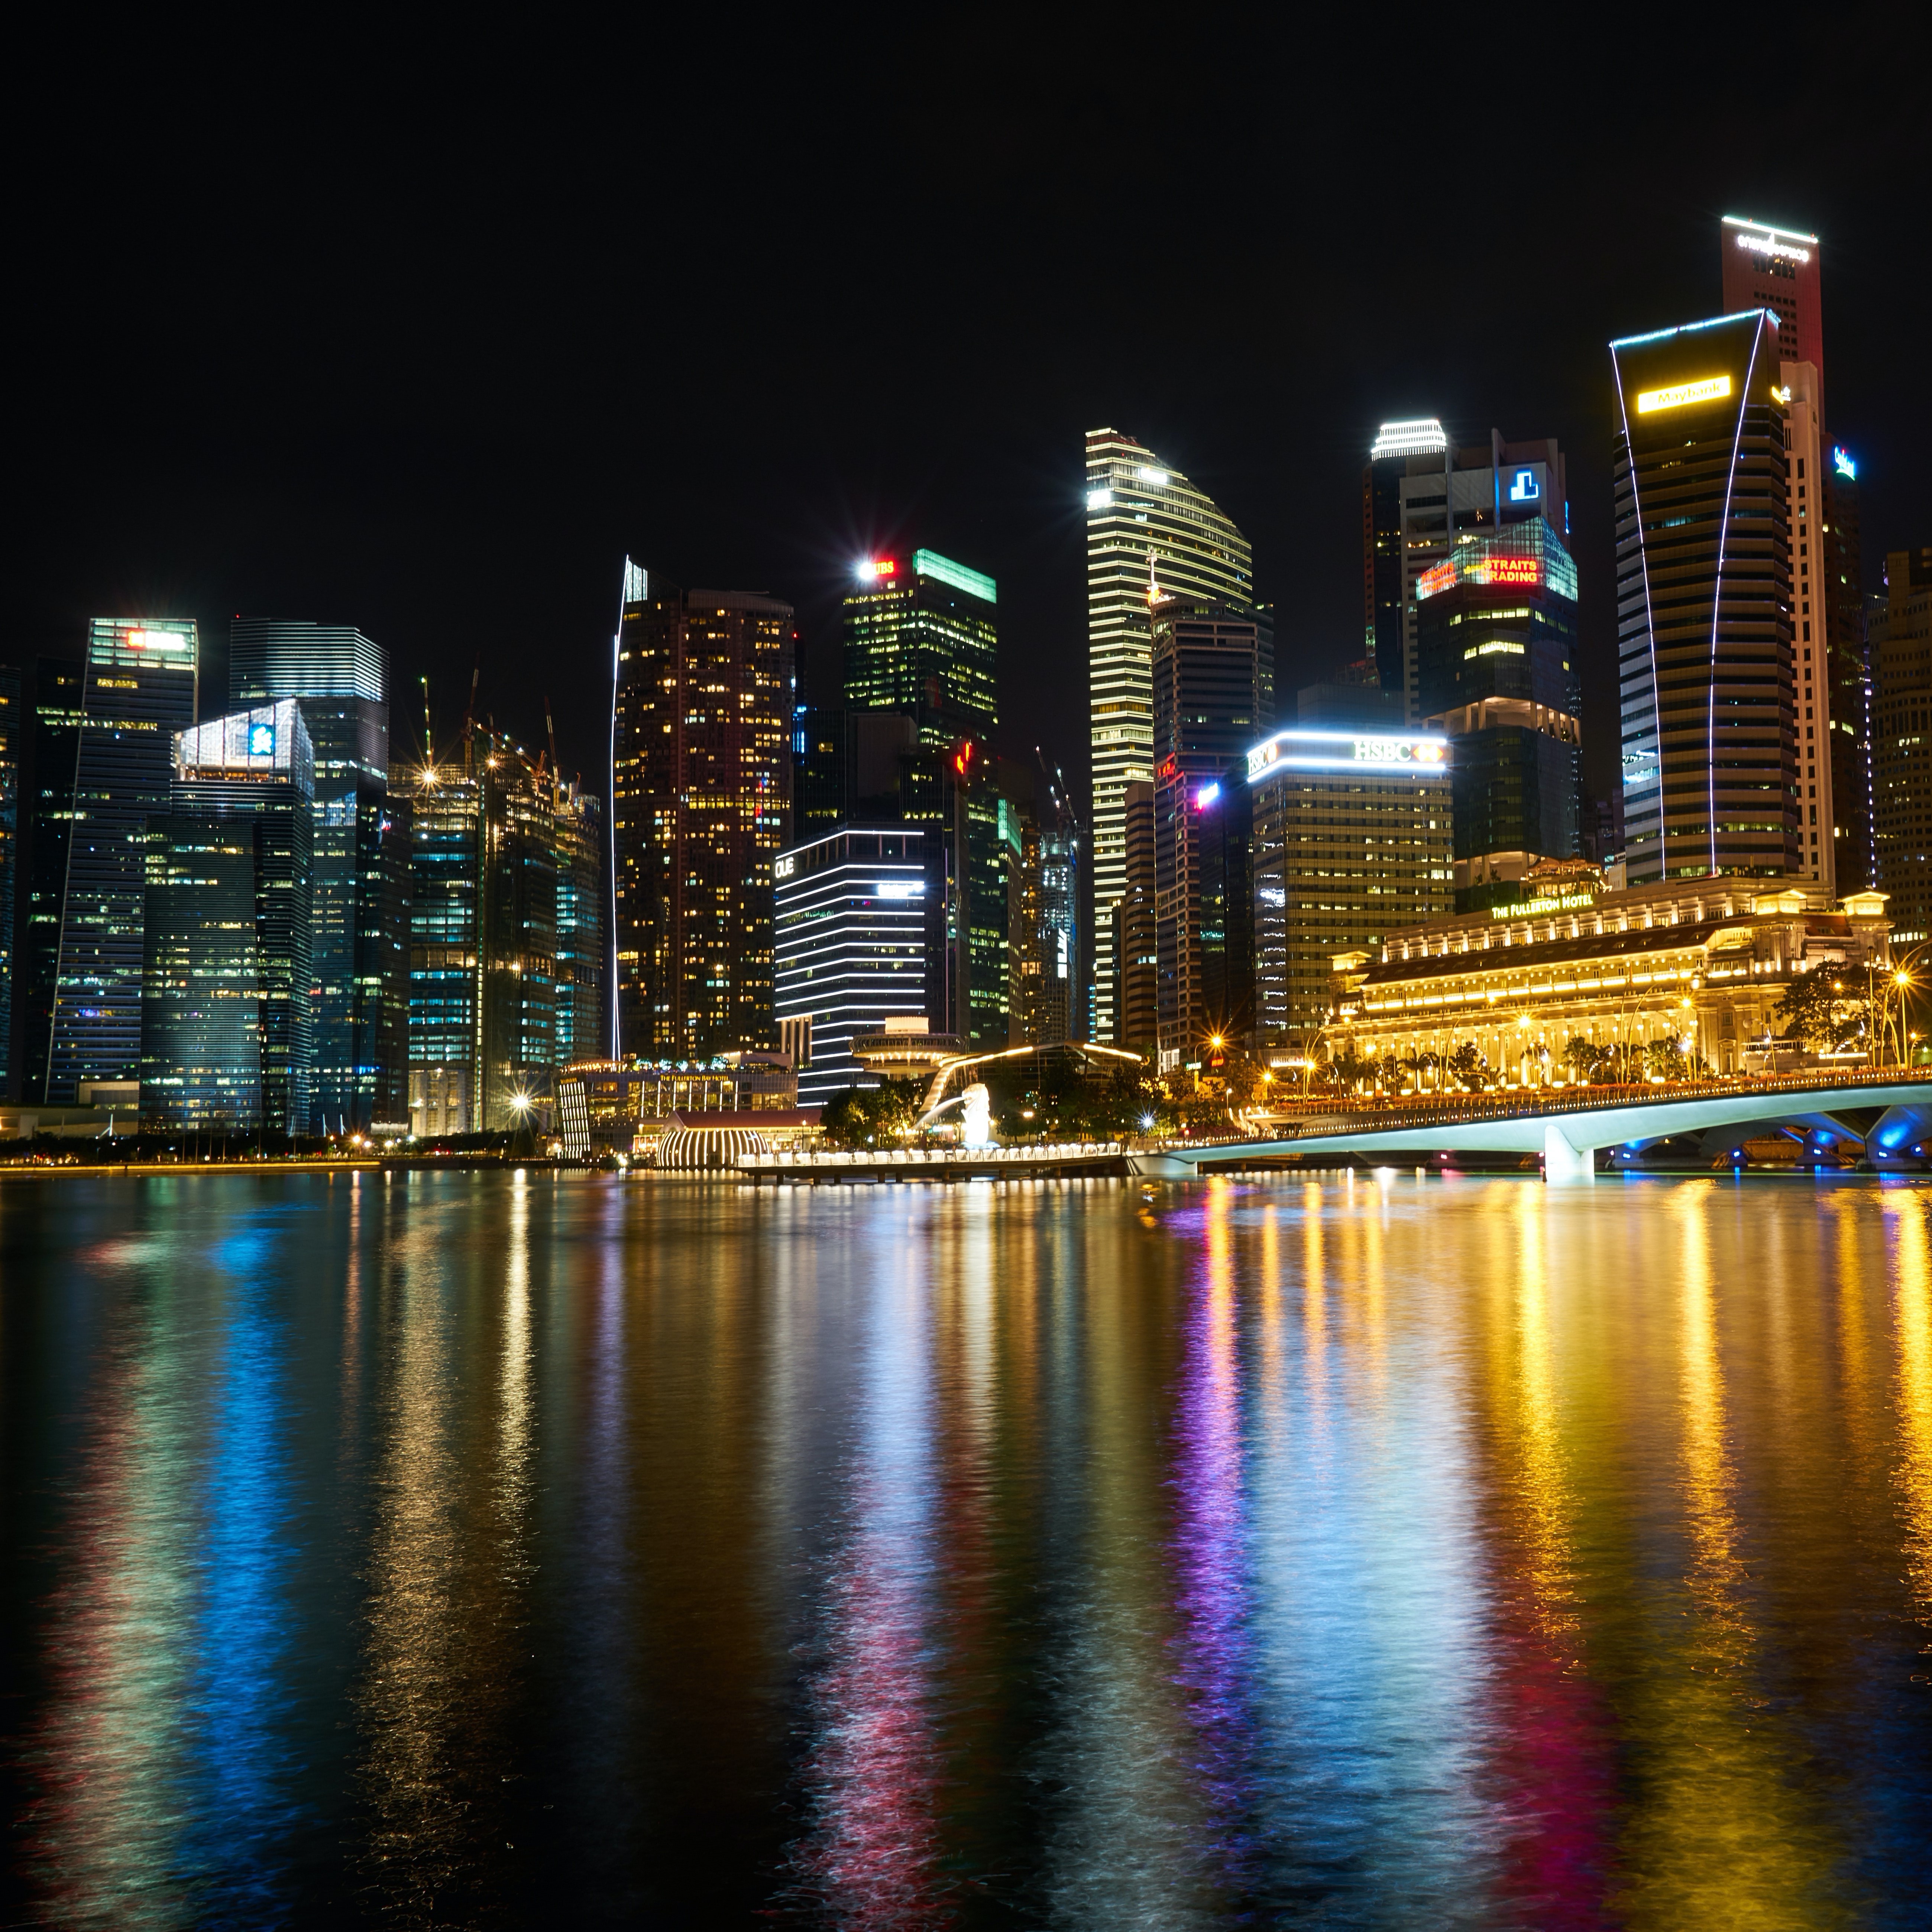 The Singapore skyline at night.